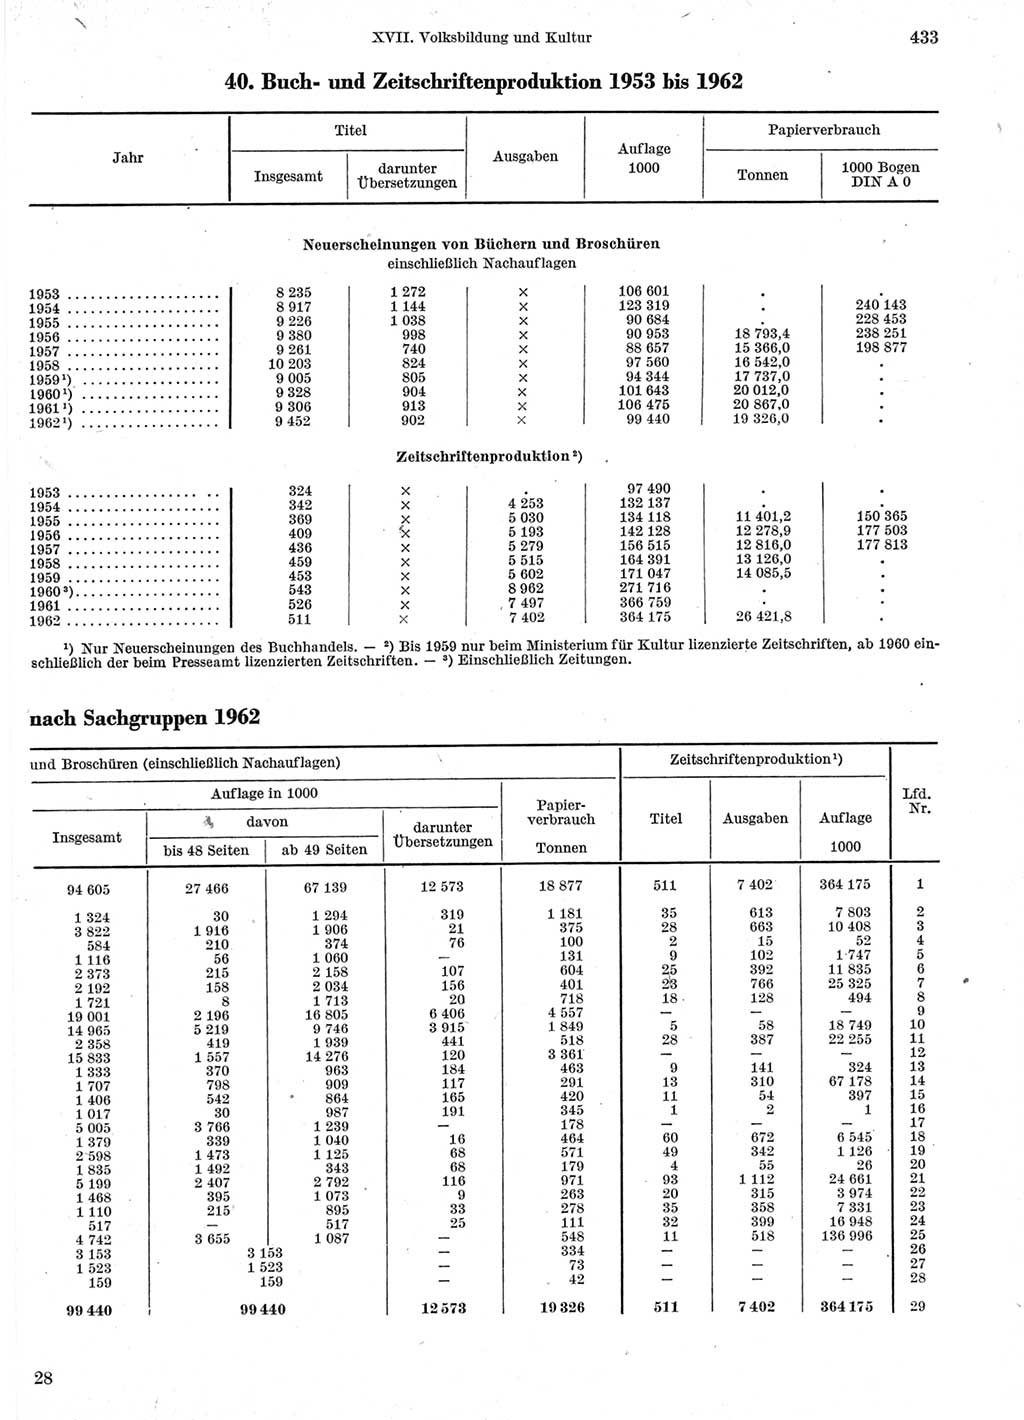 Statistisches Jahrbuch der Deutschen Demokratischen Republik (DDR) 1963, Seite 433 (Stat. Jb. DDR 1963, S. 433)